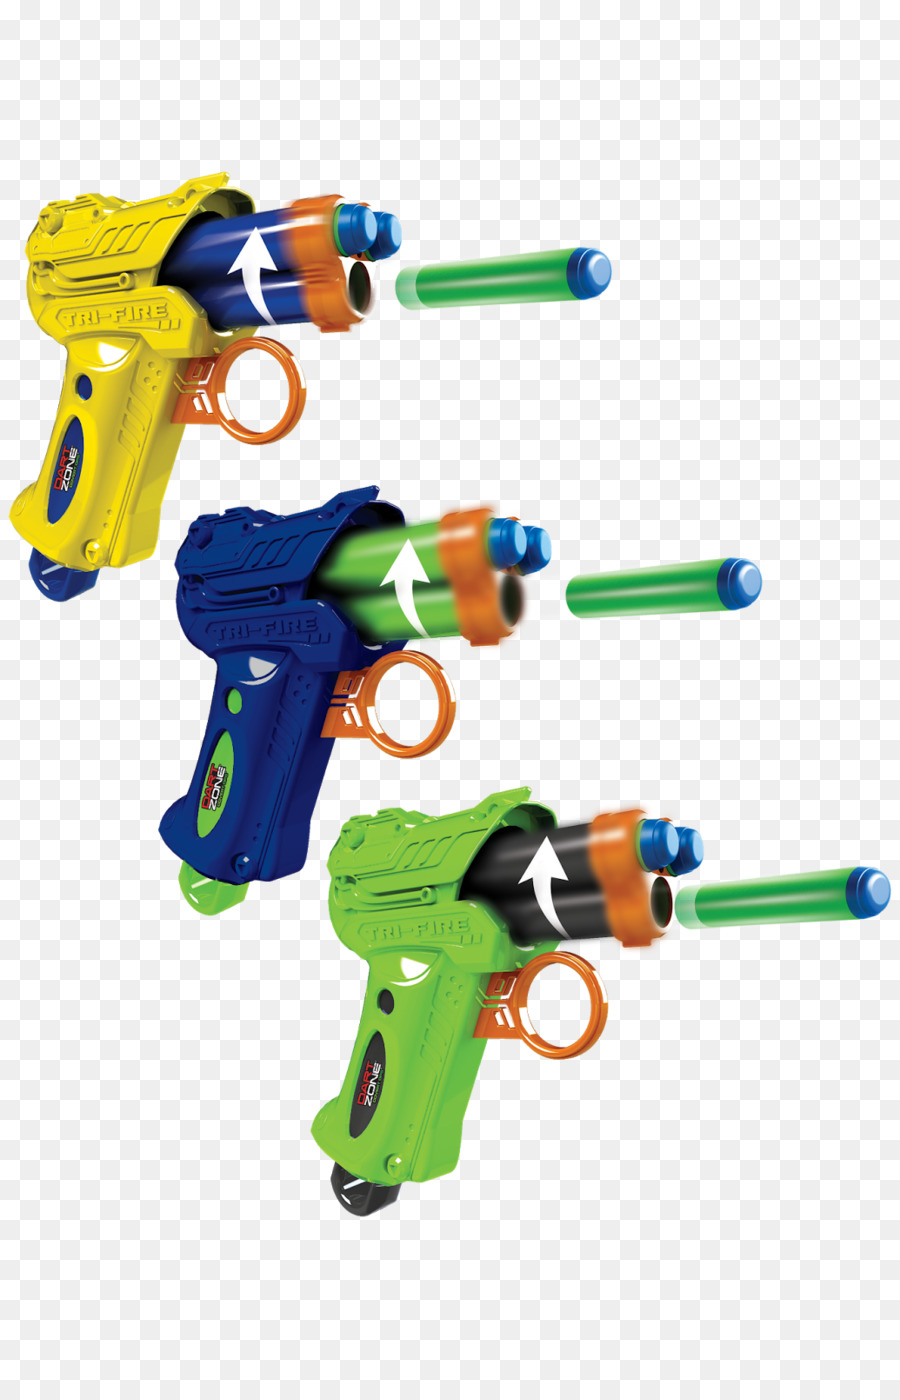 Nerf Blaster Water gun Toy - toy png download - 1035*1600 - Free Transparent Nerf png Download.